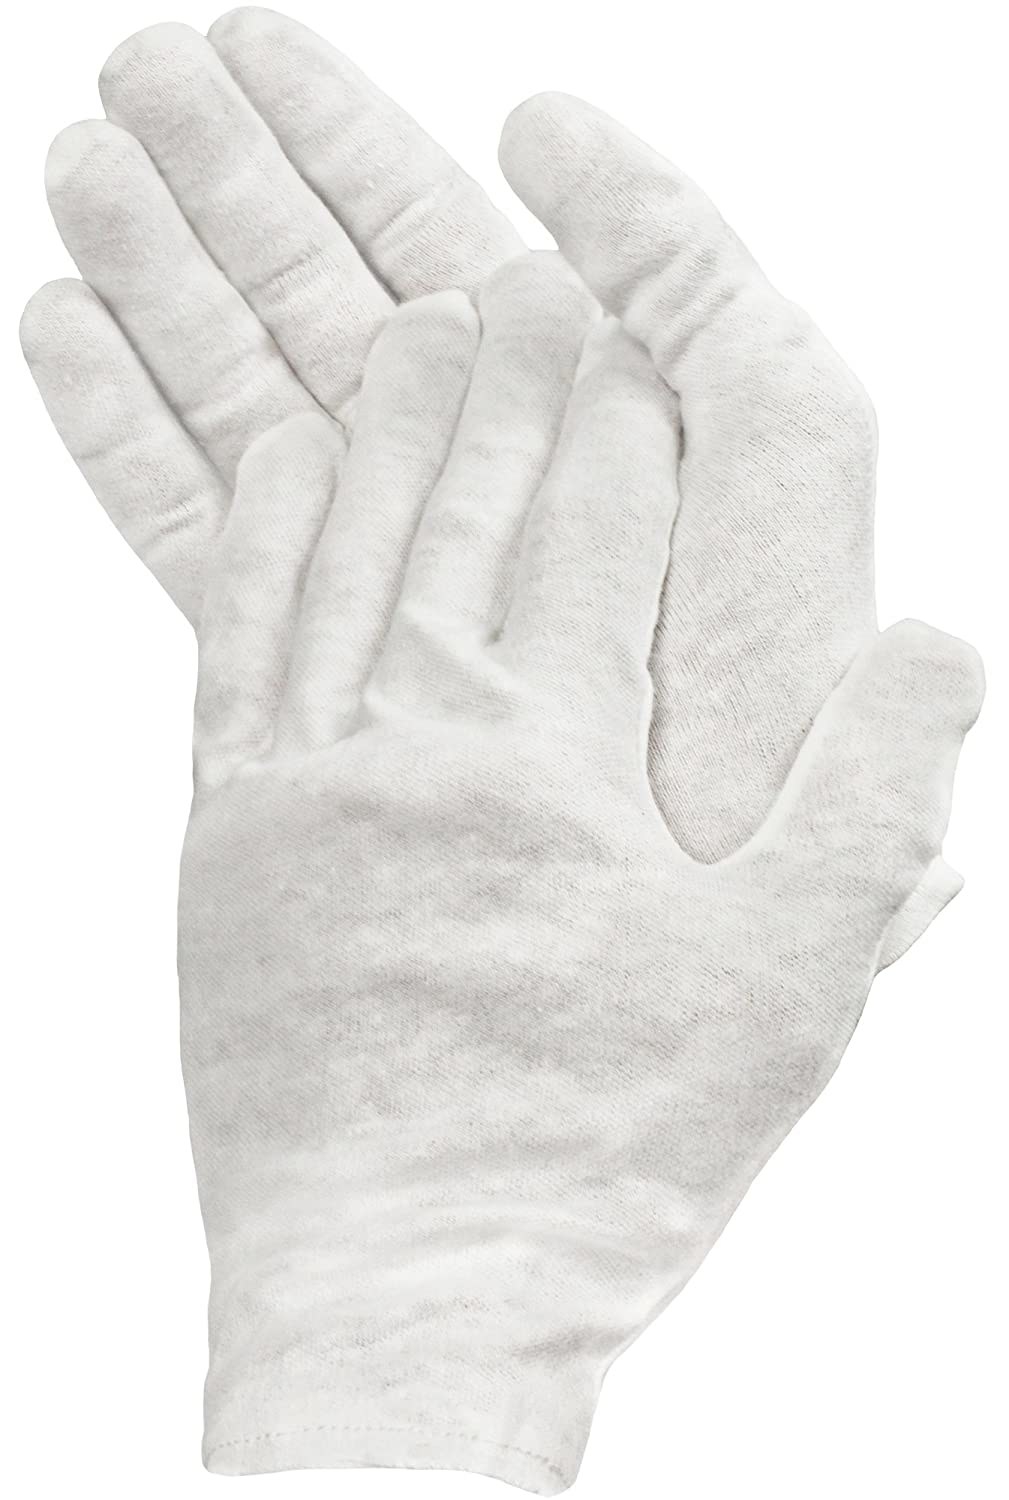 White cotton hand-healing gloves